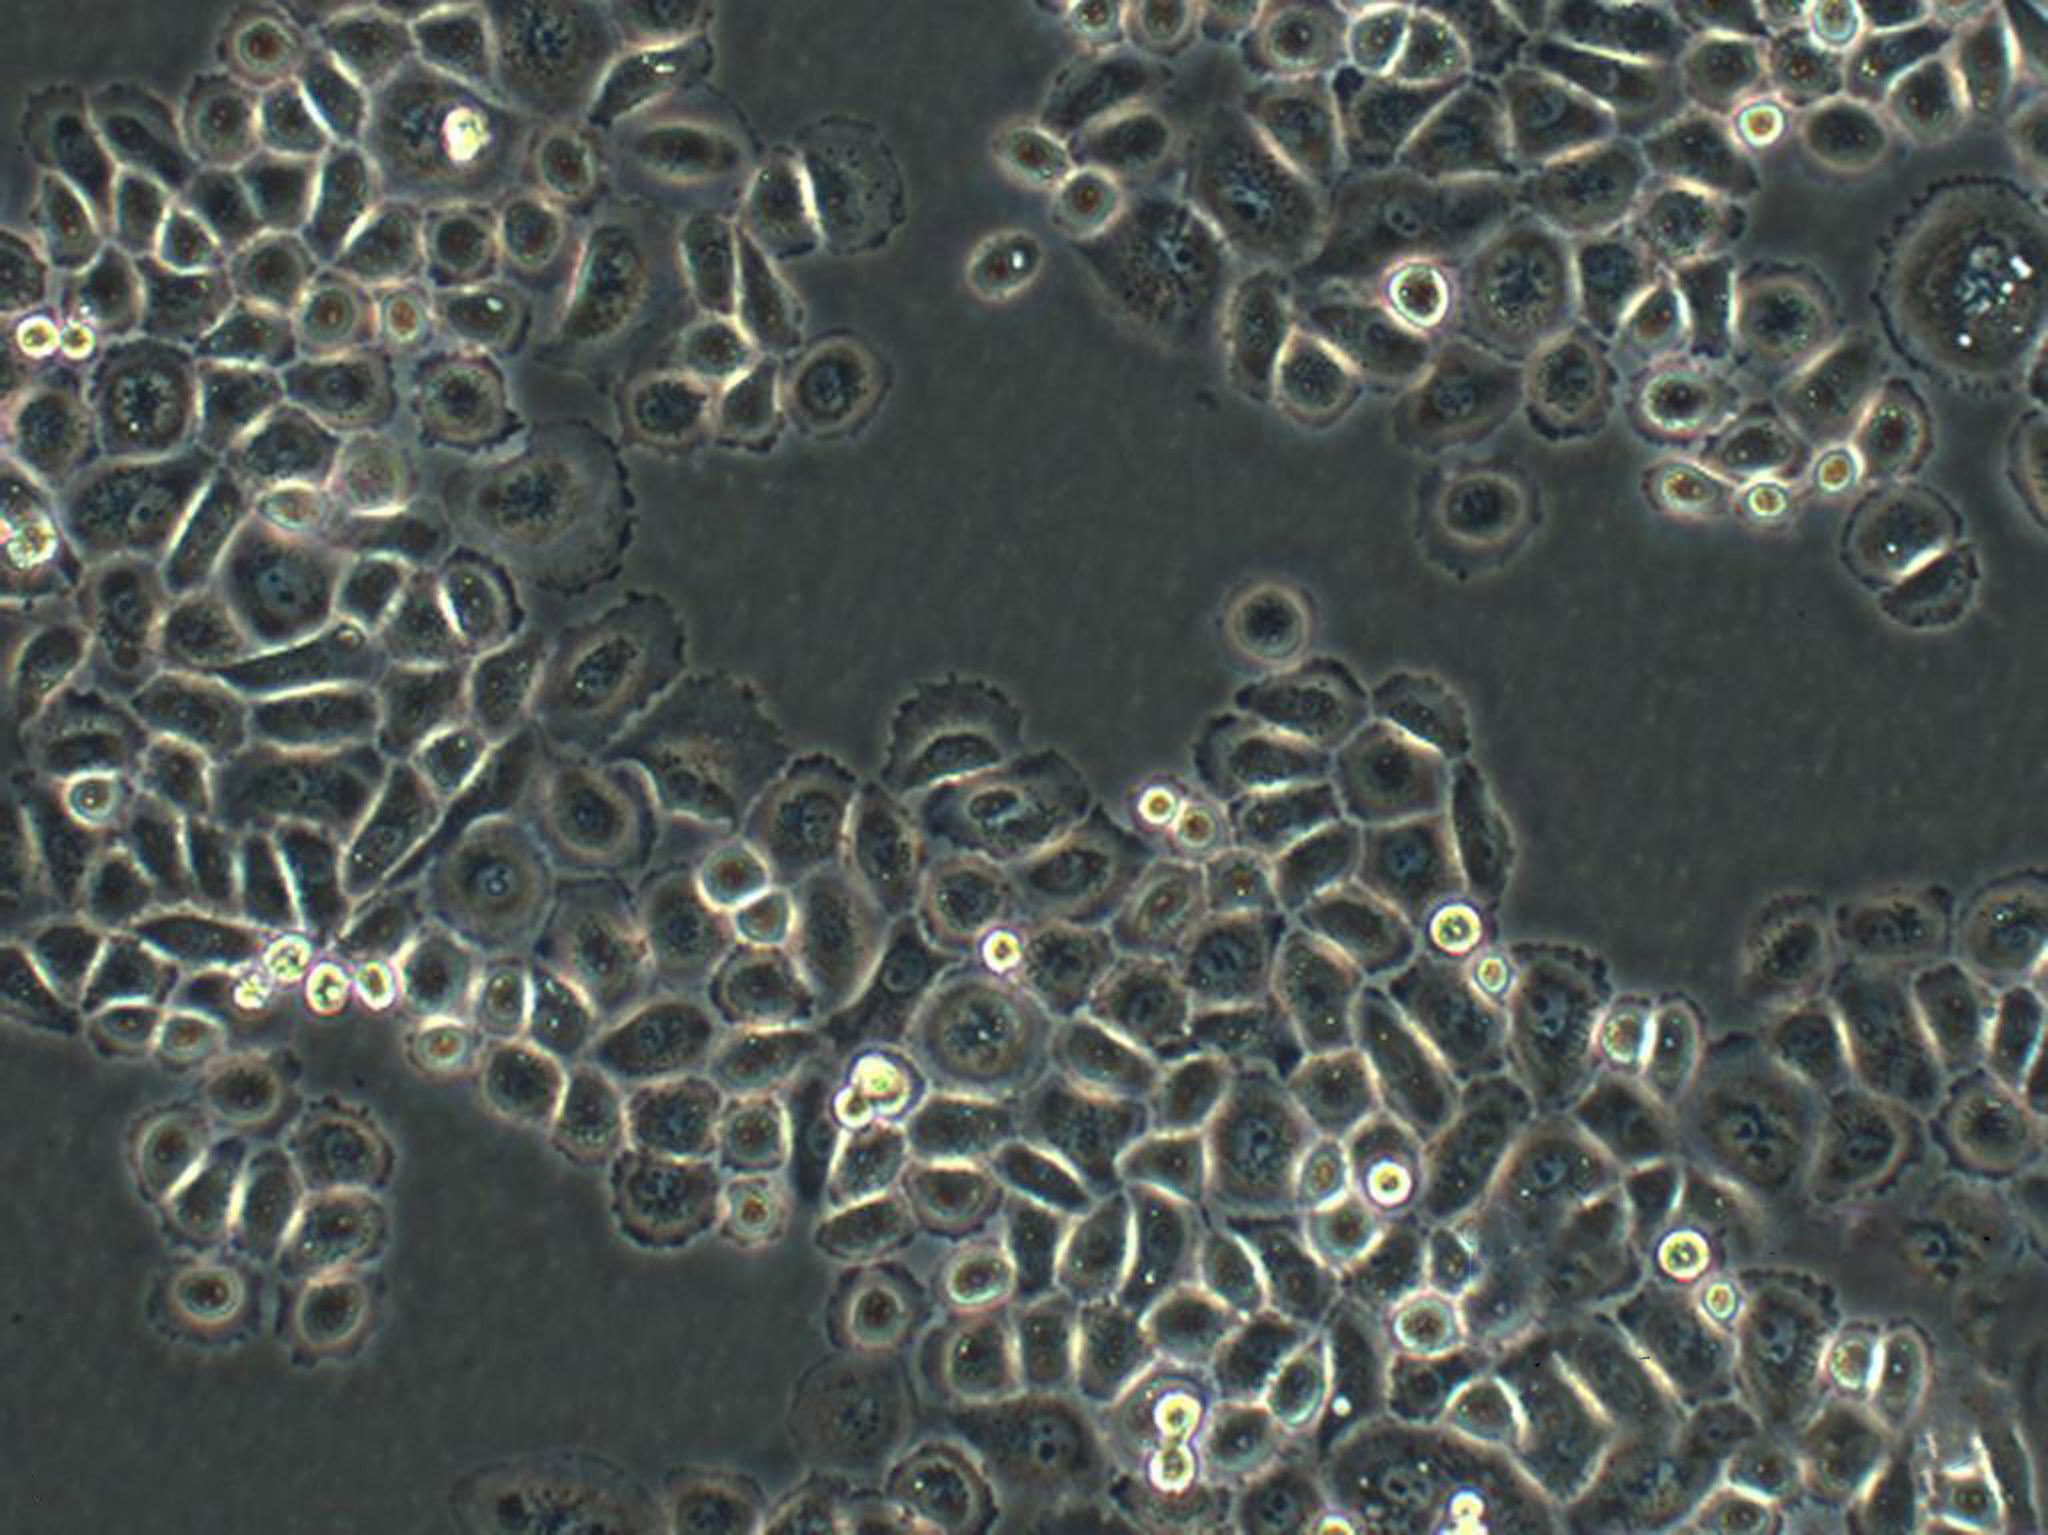 NCI-H1648 epithelioid cells人肺癌细胞系,NCI-H1648 epithelioid cells